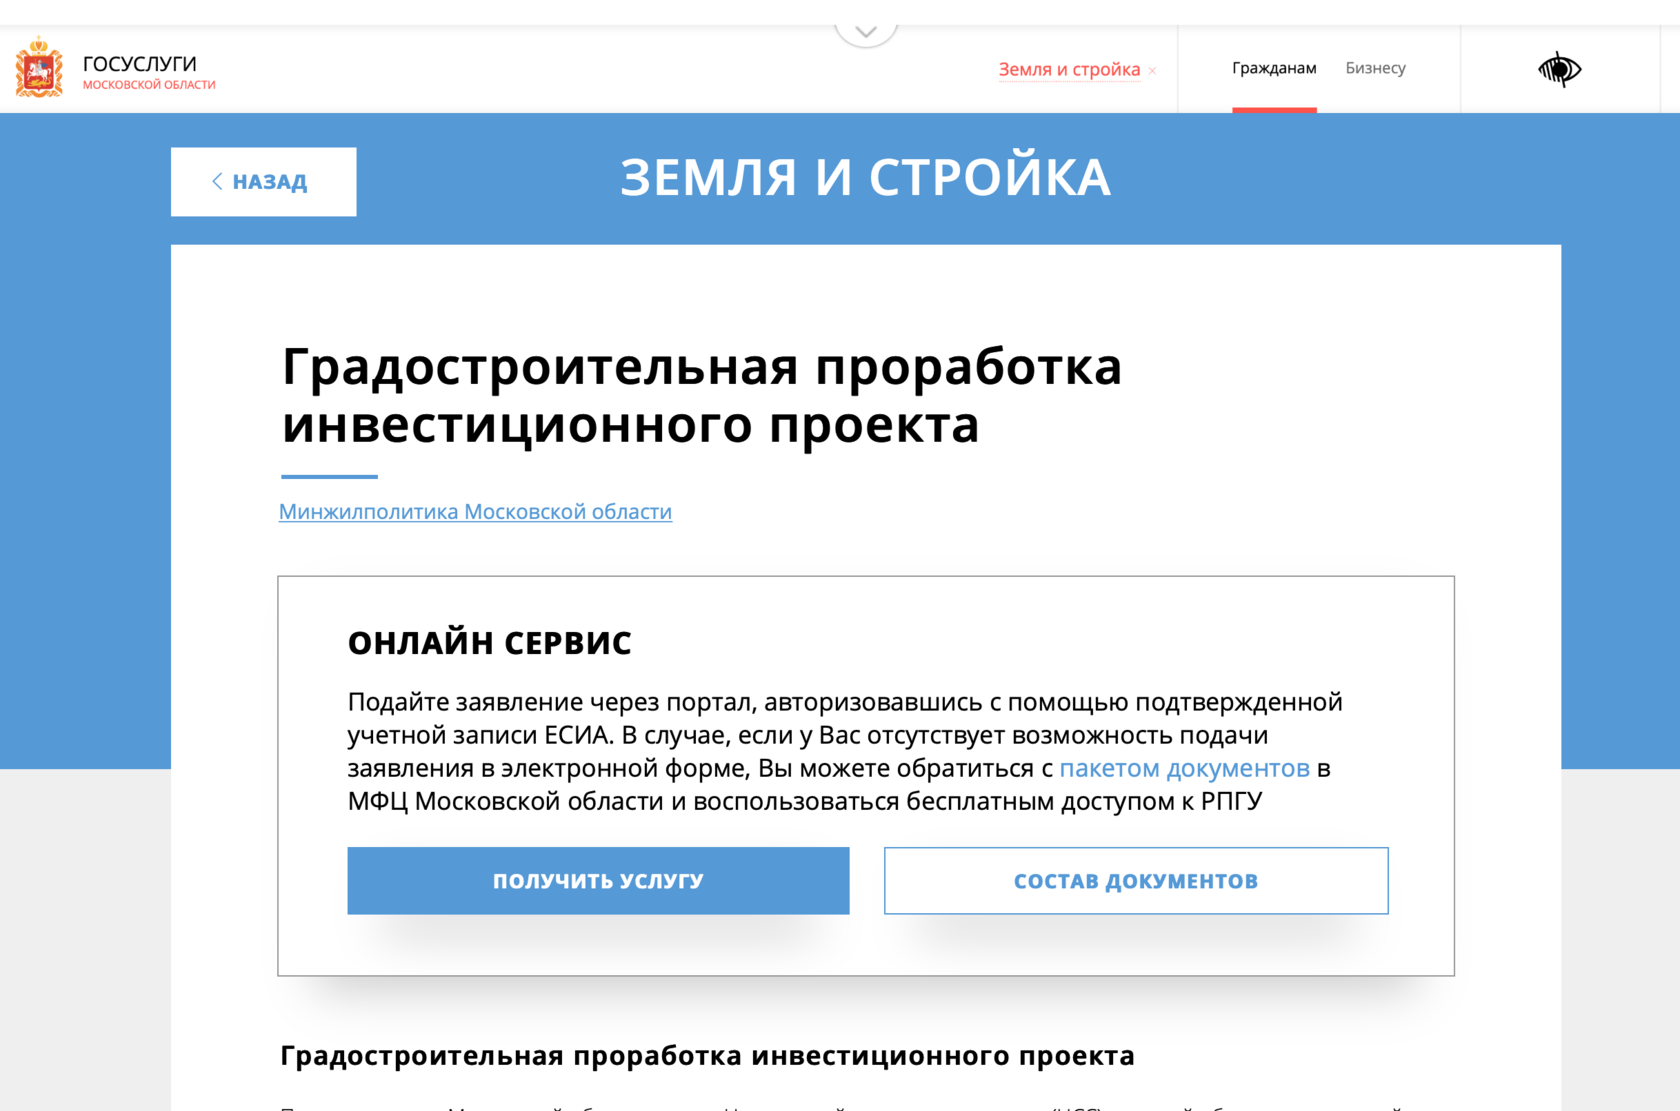 Сайт строительства московской области